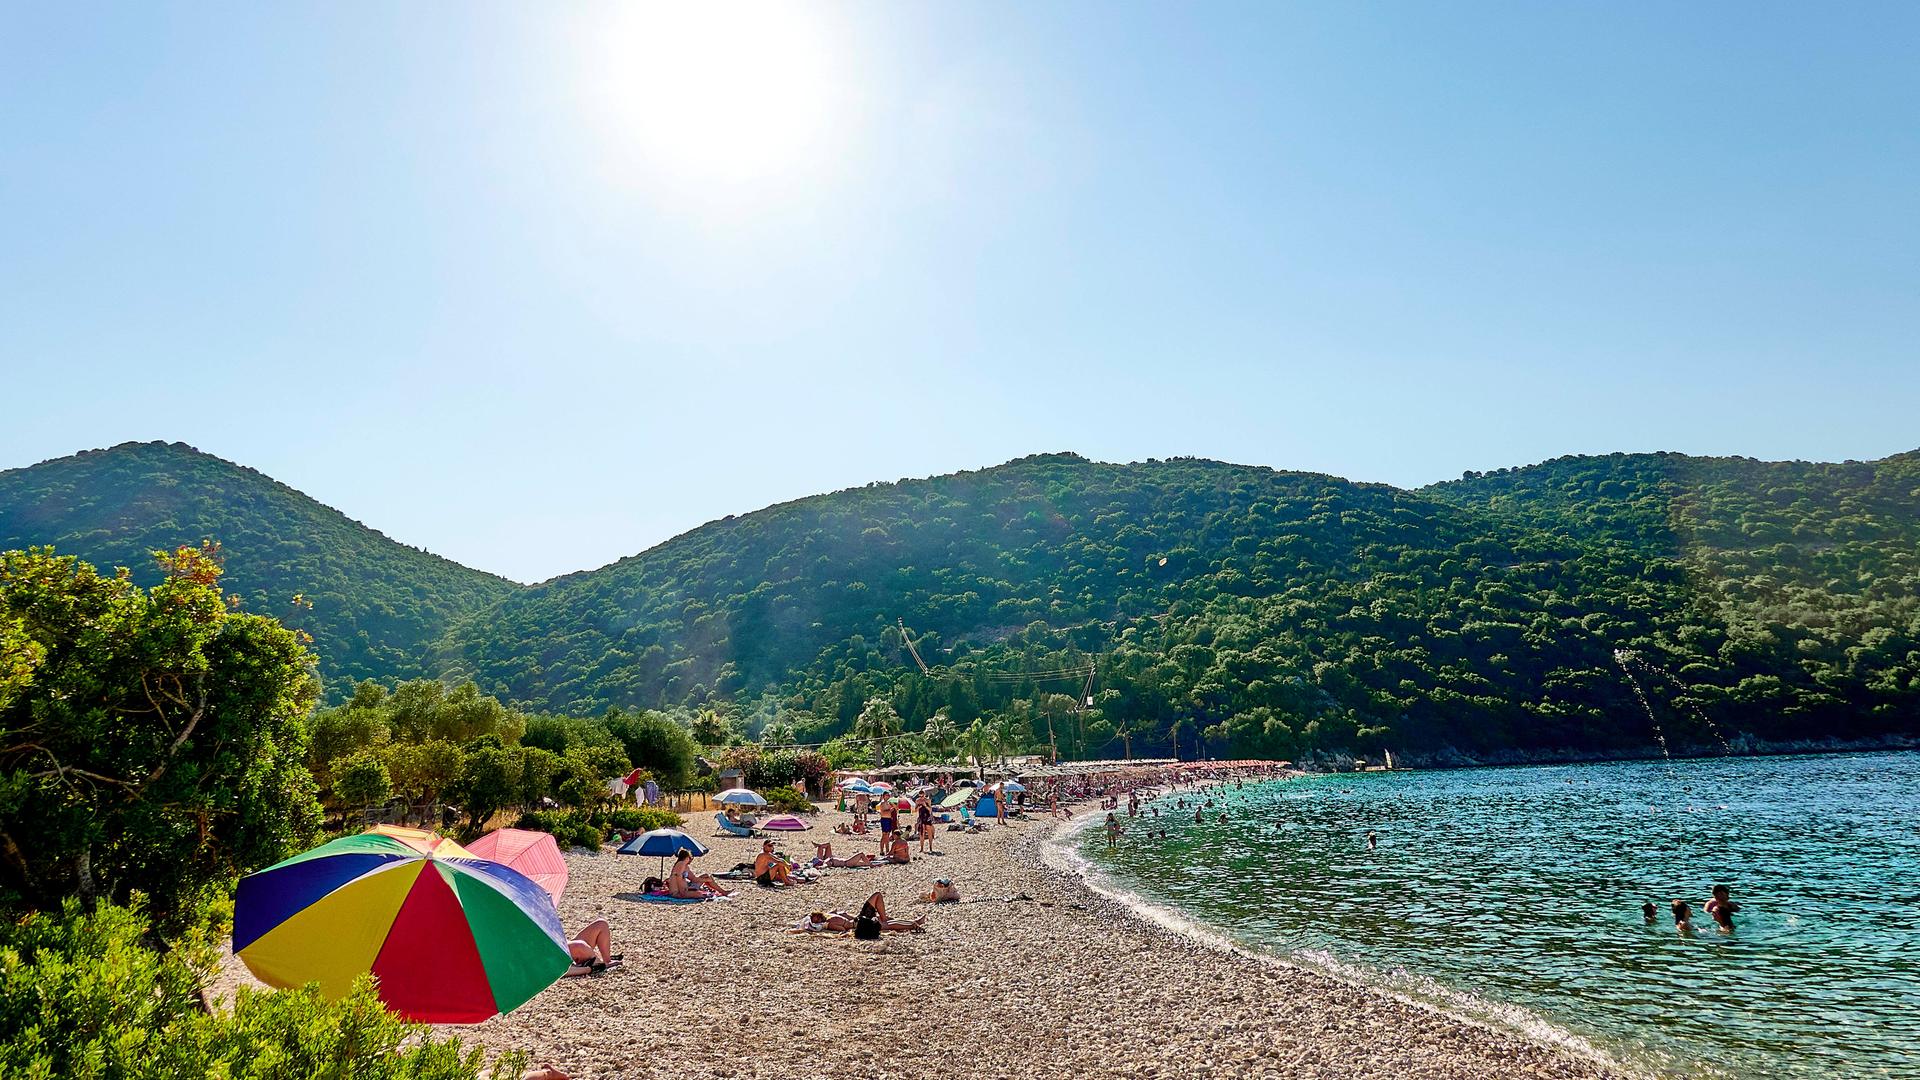 Strand auf Kefalonia, der größten griechischen Insel im  ionischen Meer